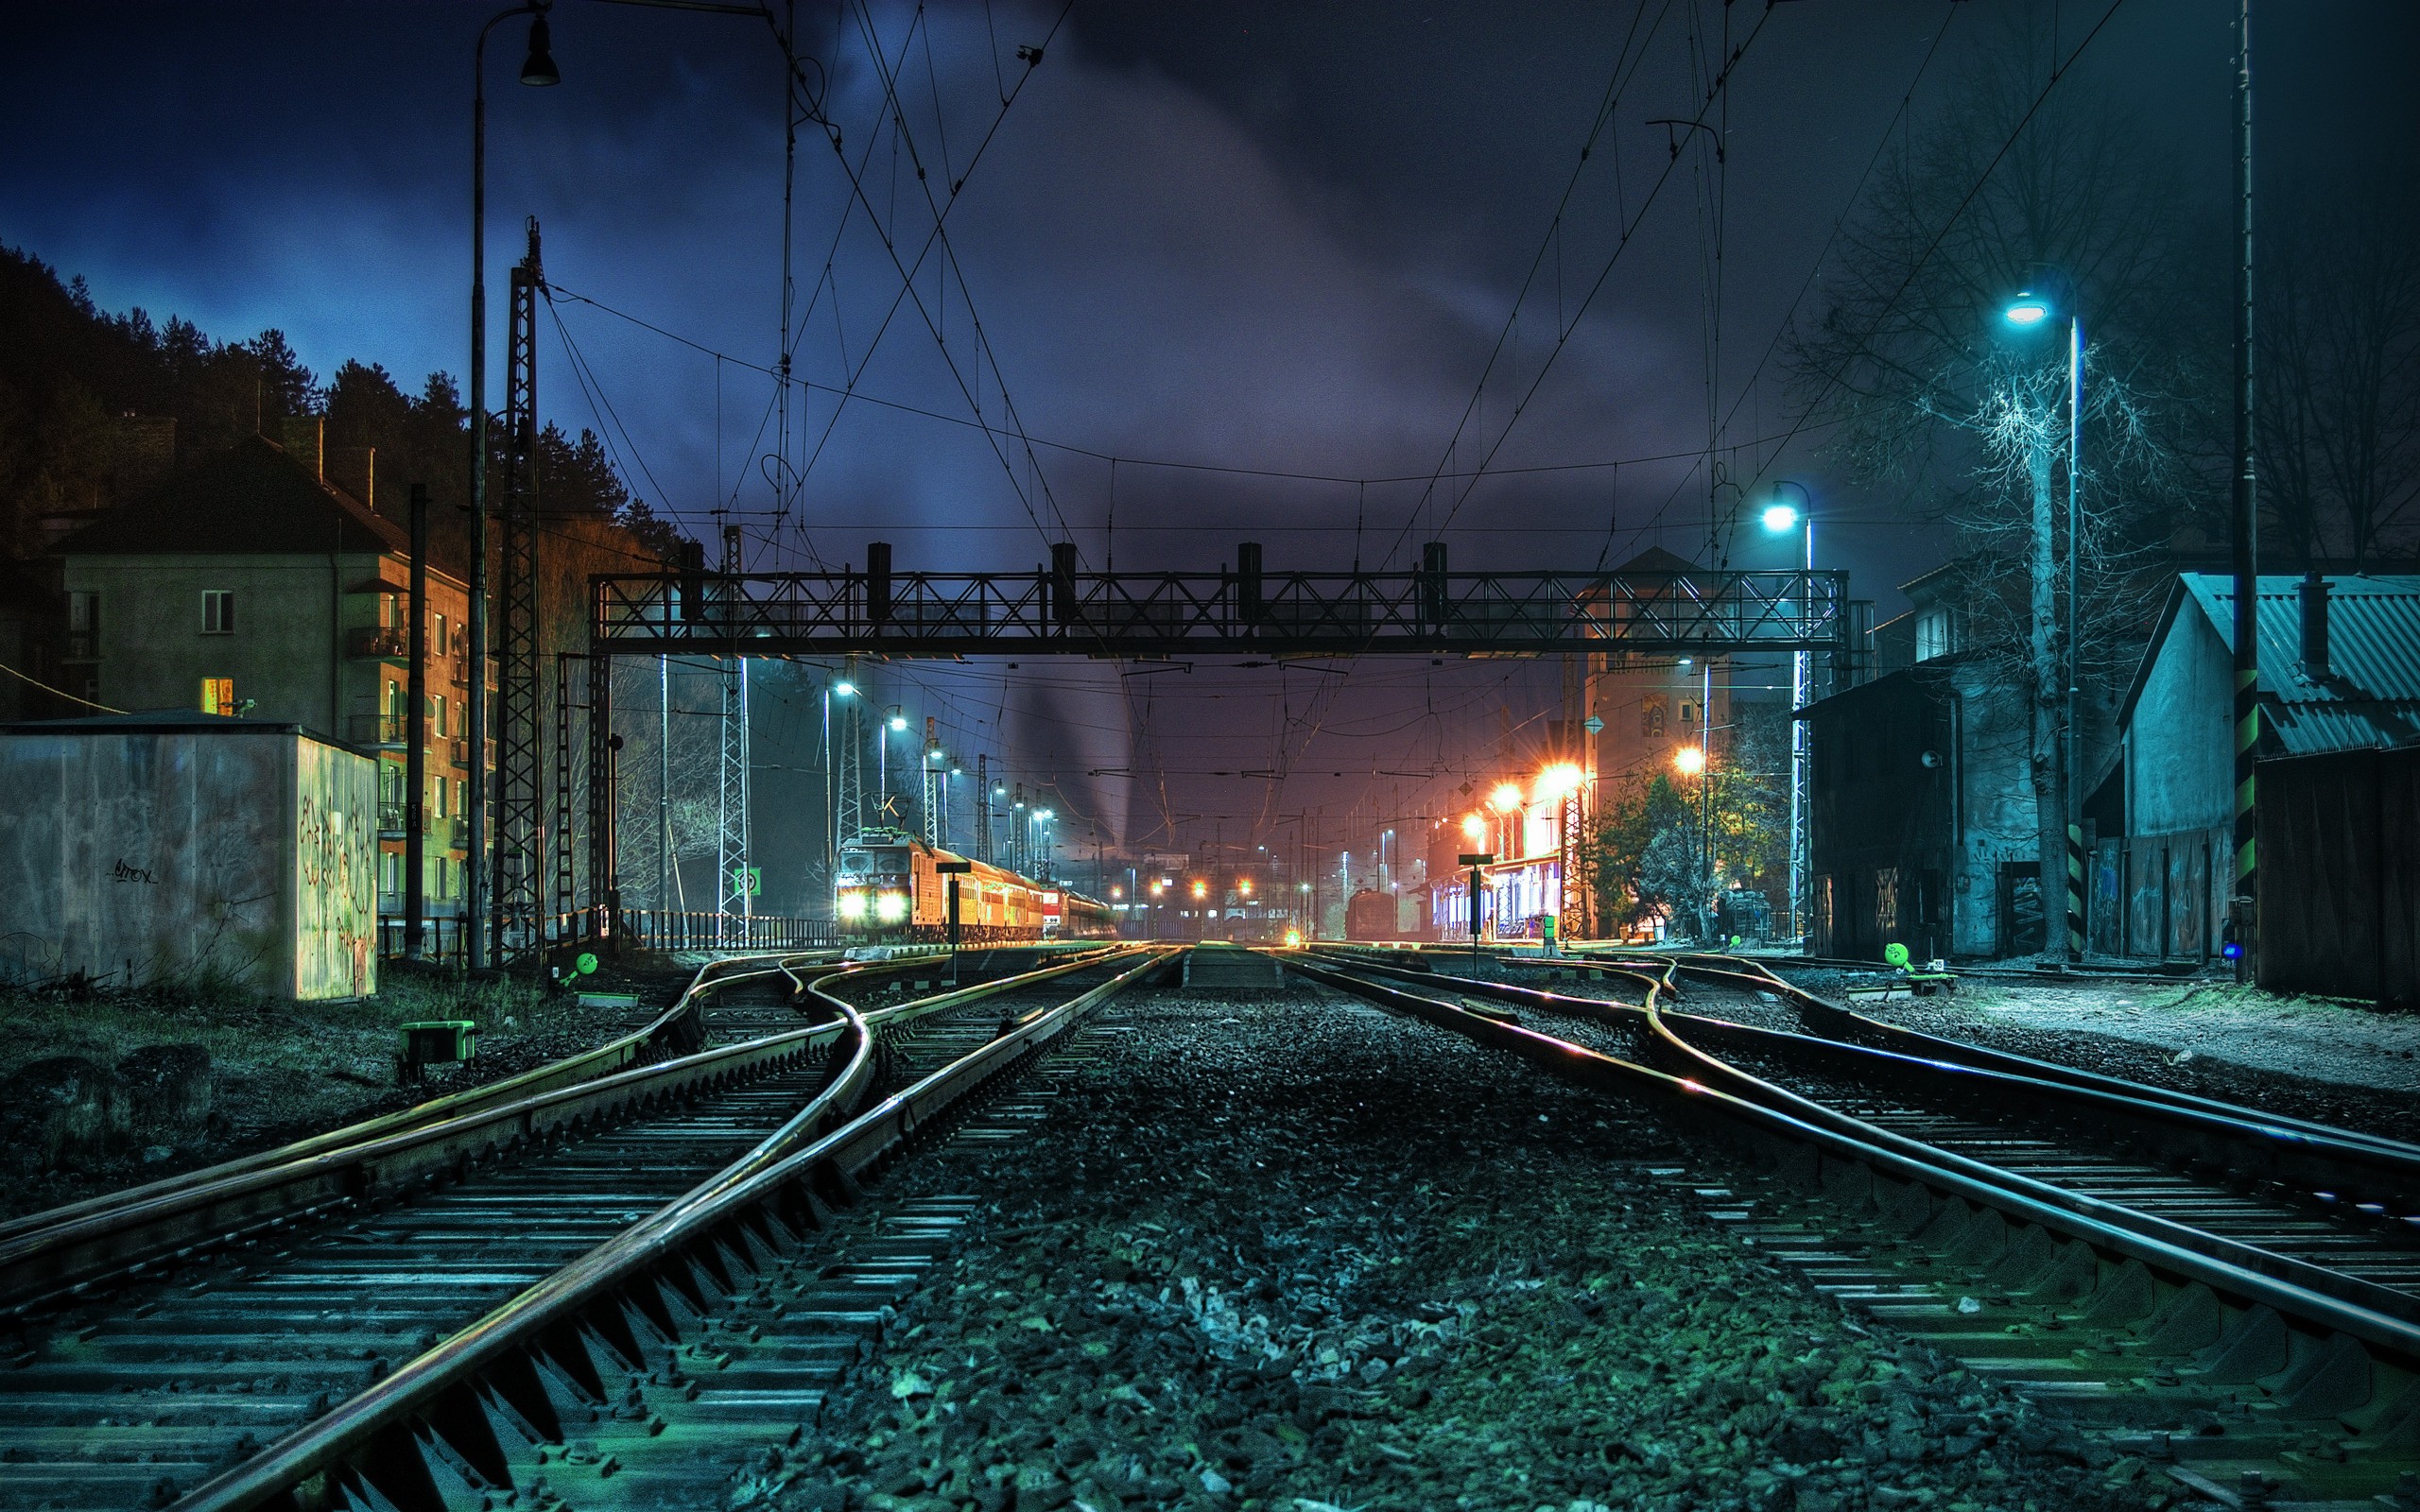 General 2560x1600 night train train station railway vehicle HDR Slovakia